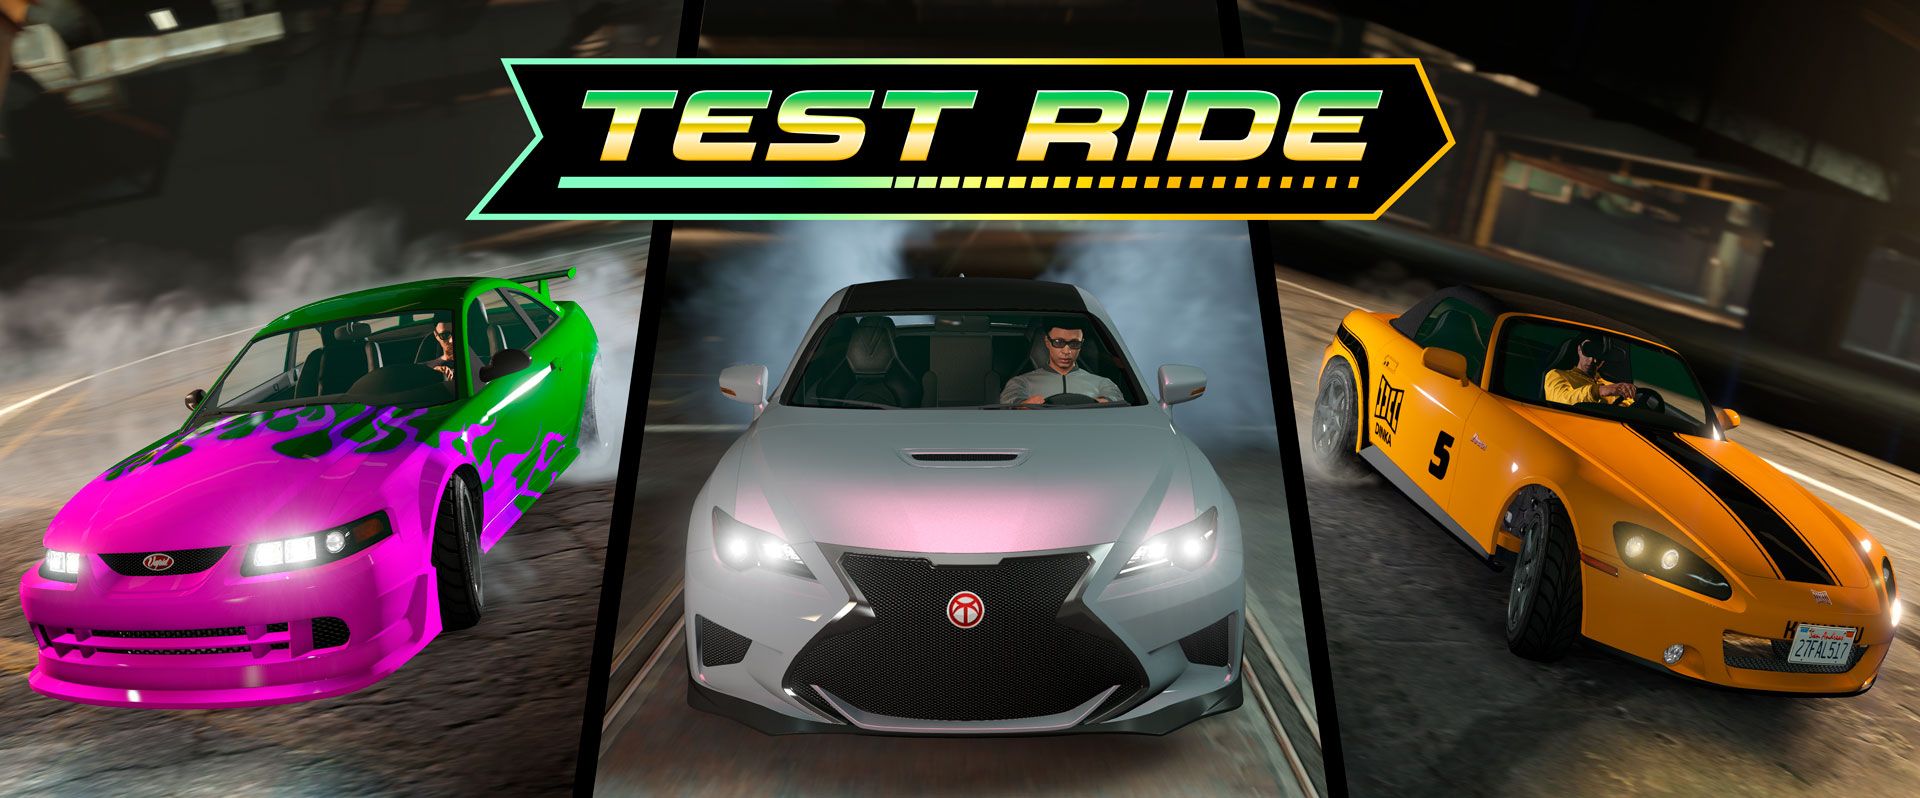 Testovací jízdy Gta Online 8 5 2021